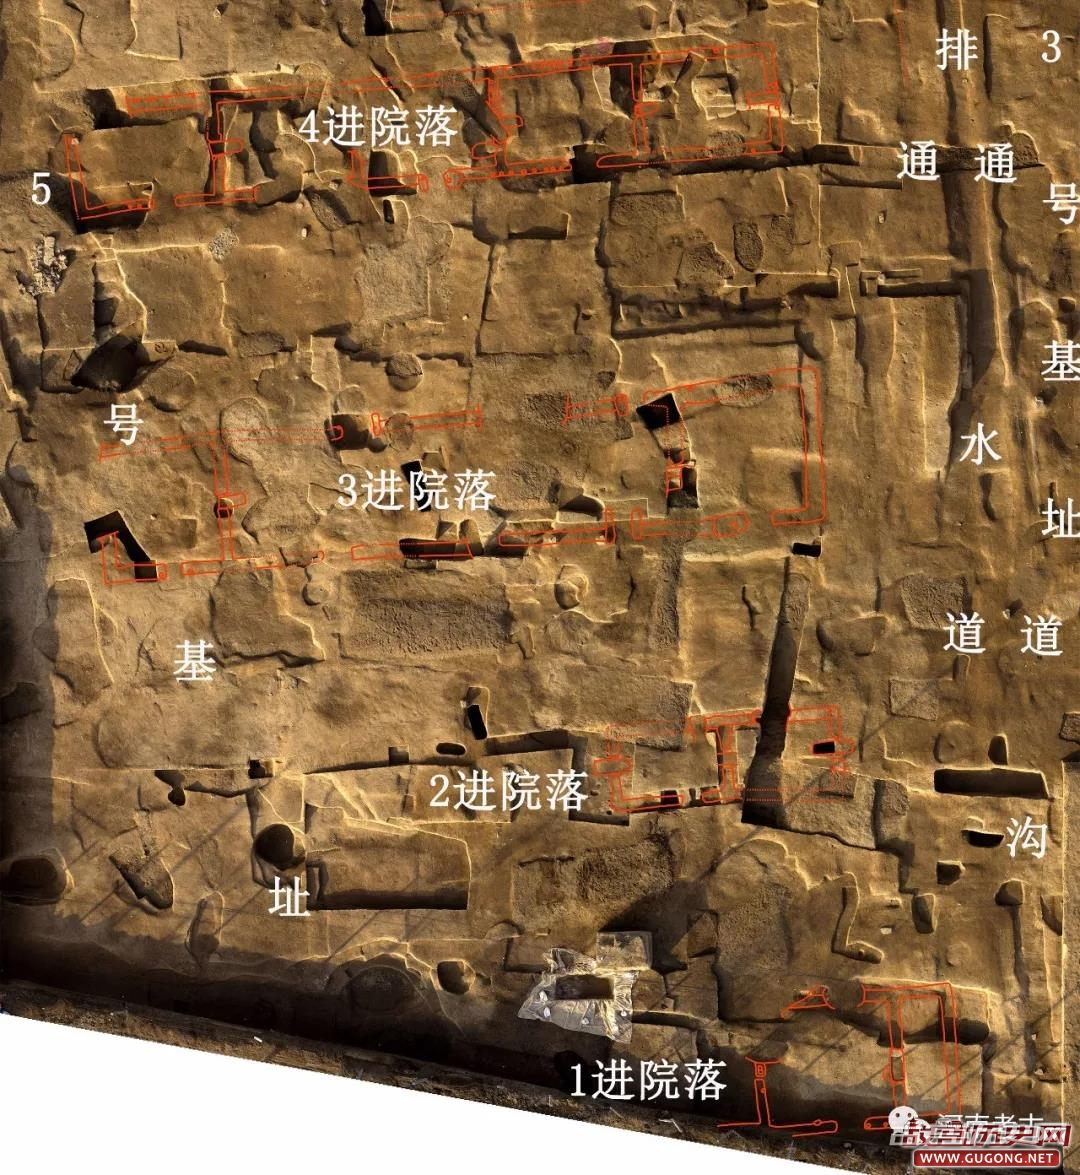 2017年河南省五大考古新发现